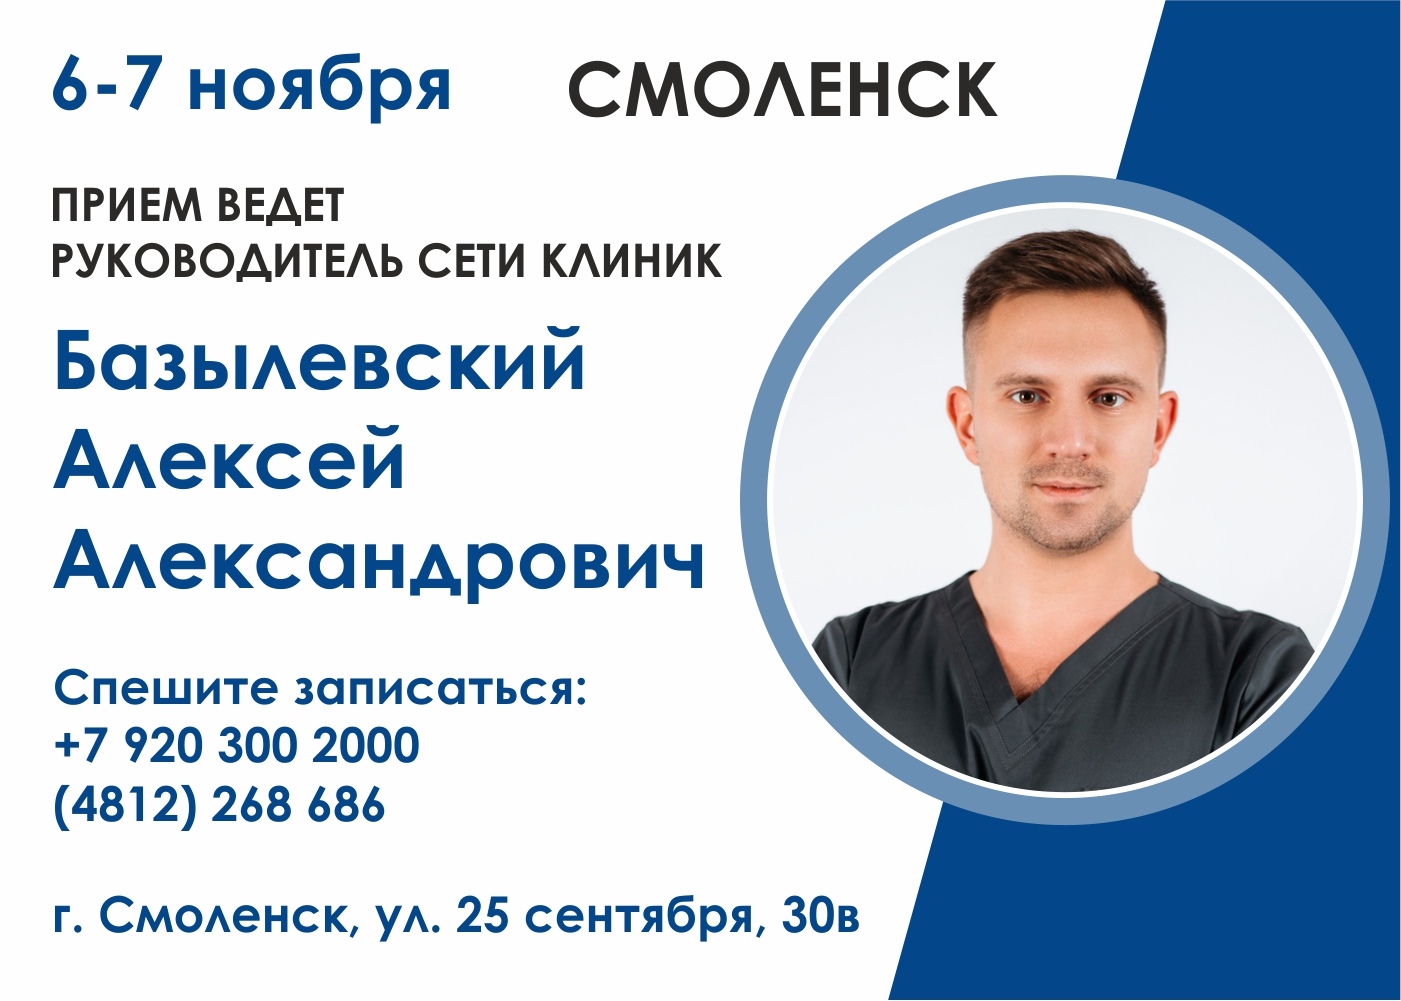 6-7 ноября в филиале "Смоленск" прием ведет главный врач Базылевский Алексей Александрович